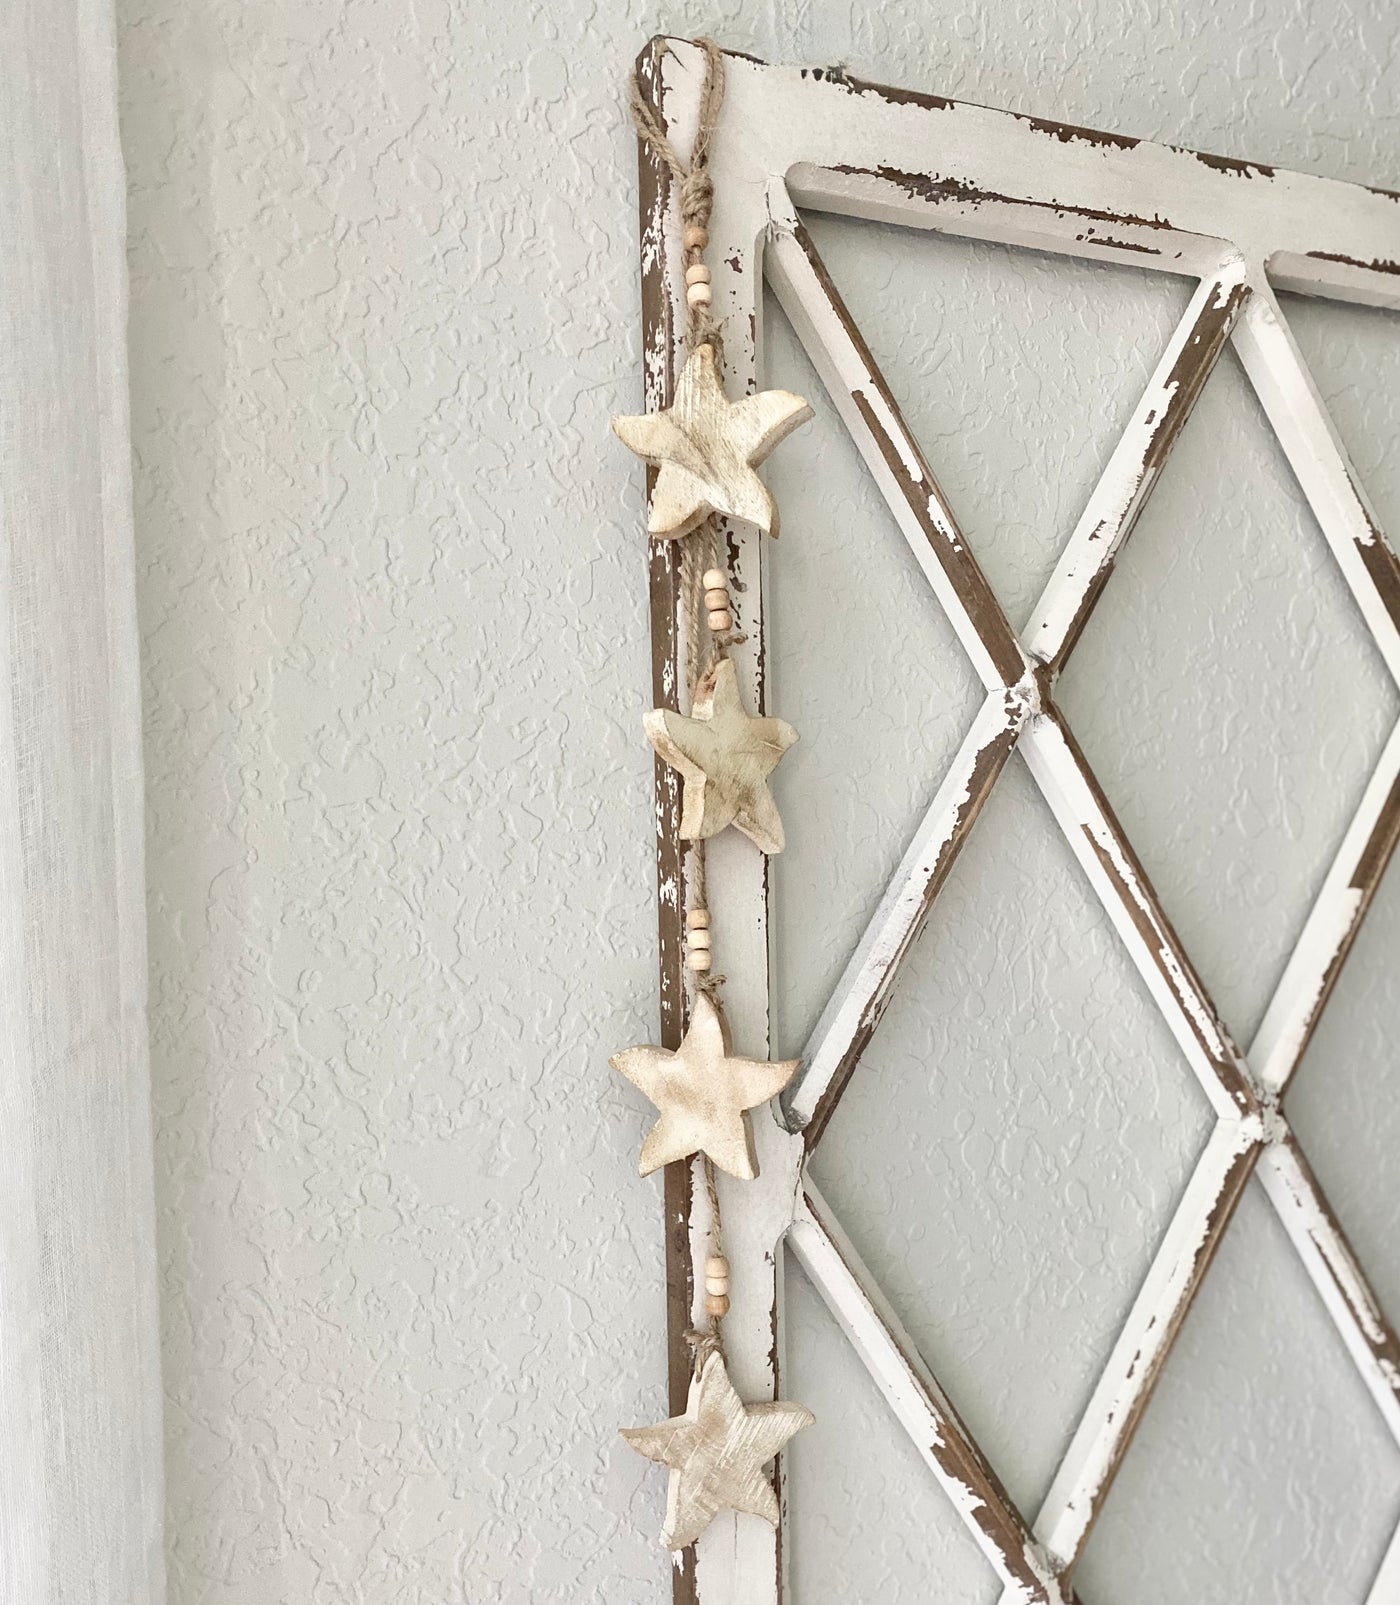 Hanging Wooden Starfish